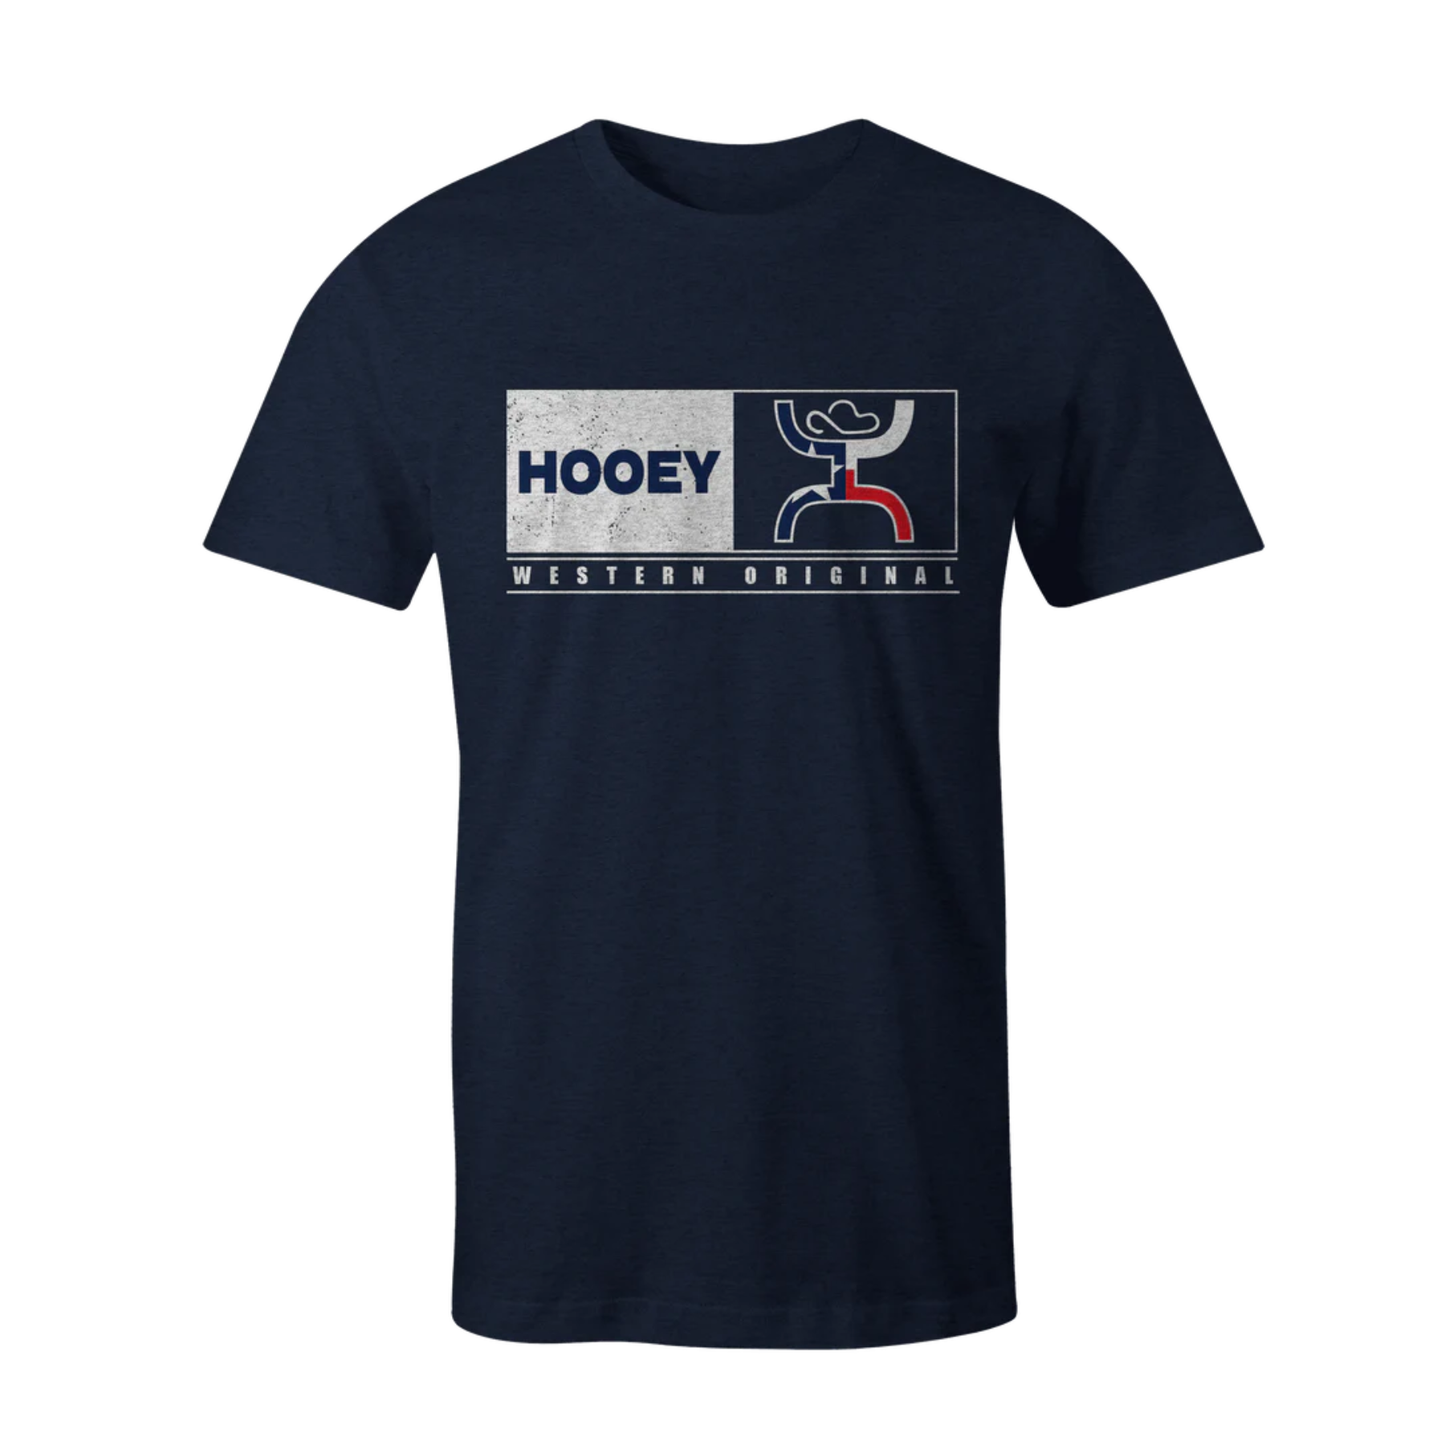 Hooey Men's Western Original Match Navy T-Shirt HT1553NV